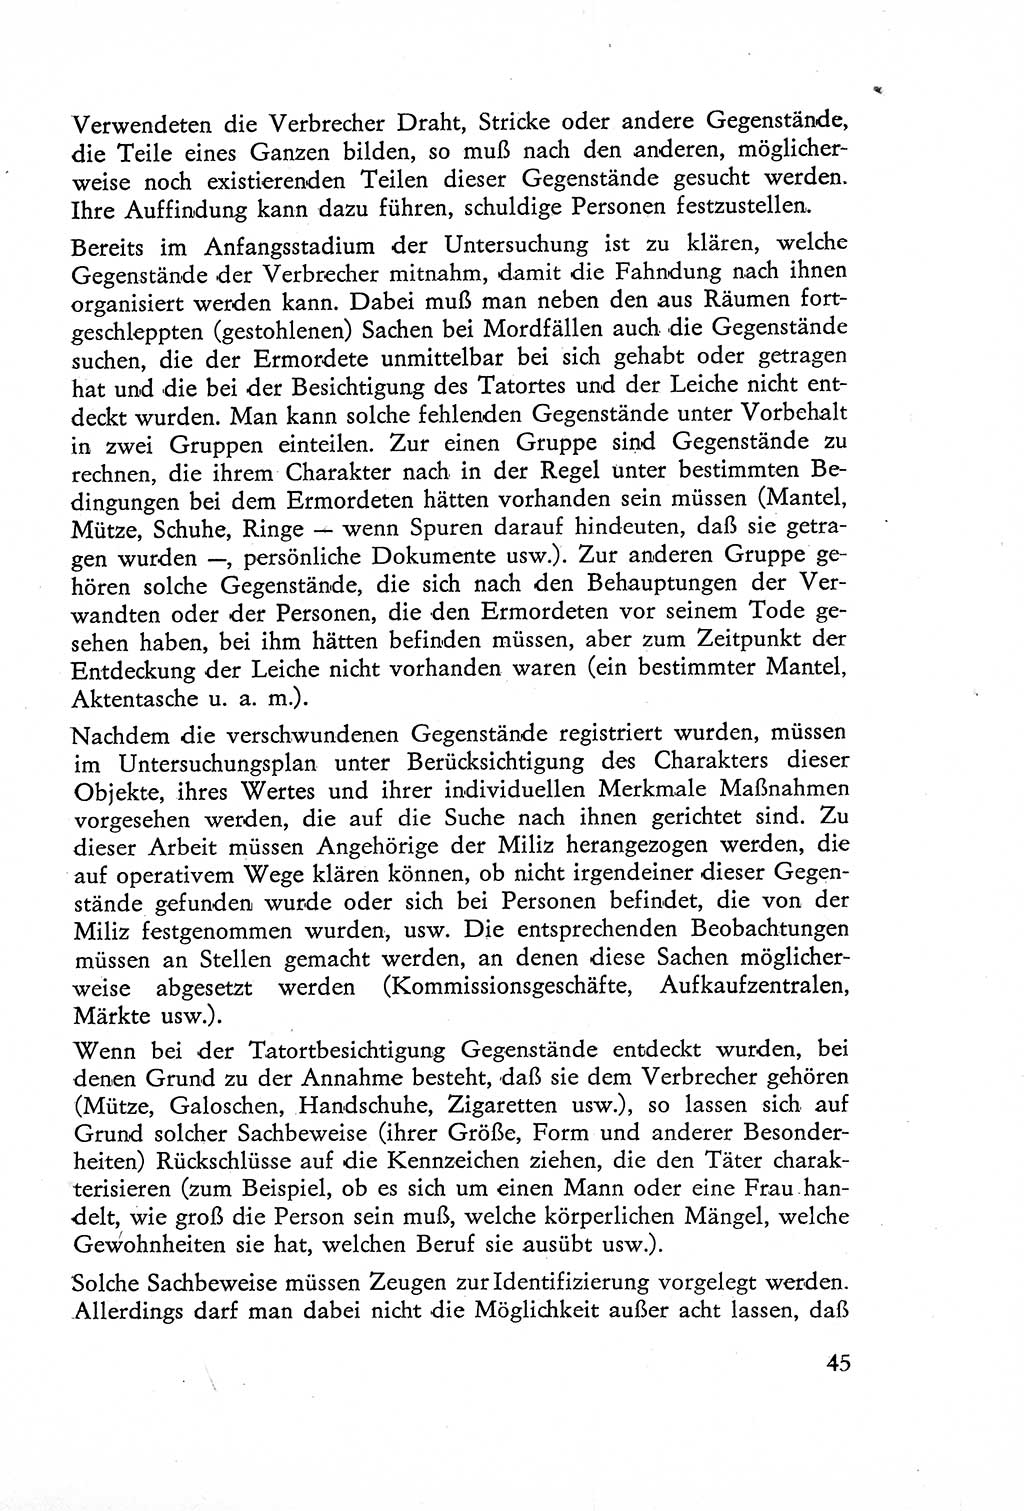 Die Untersuchung einzelner Verbrechensarten [Deutsche Demokratische Republik (DDR)] 1960, Seite 45 (Unters. Verbr.-Art. DDR 1960, S. 45)